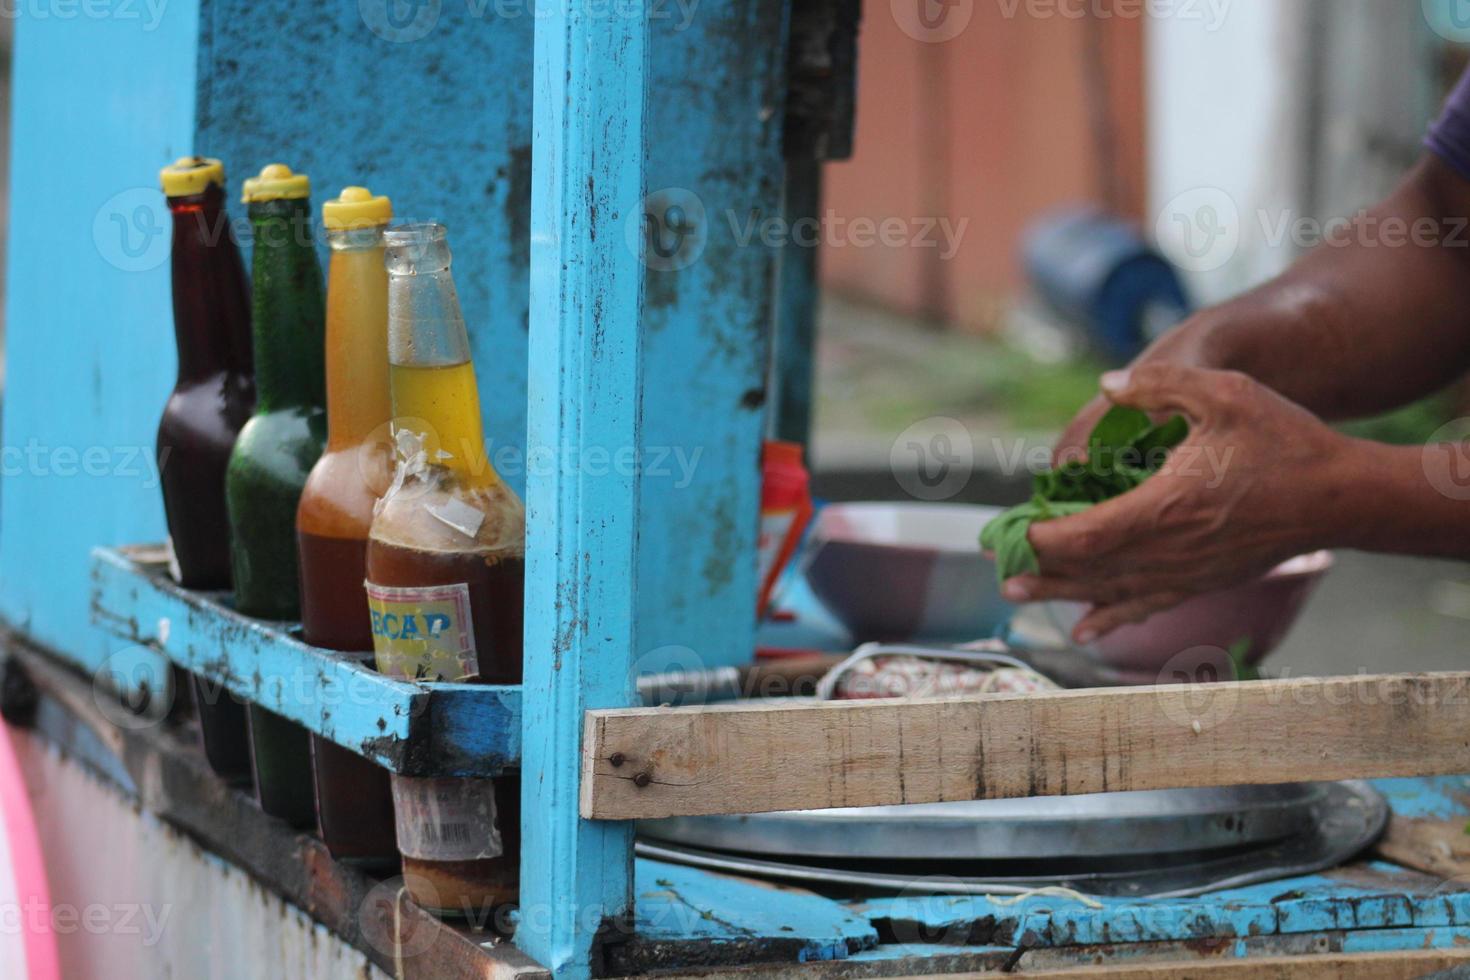 un indonésien penjual mie ayam bakso ou vendeur de nouilles au poulet aux boulettes de viande qui fabrique des nouilles au poulet pour l'acheteur. photo